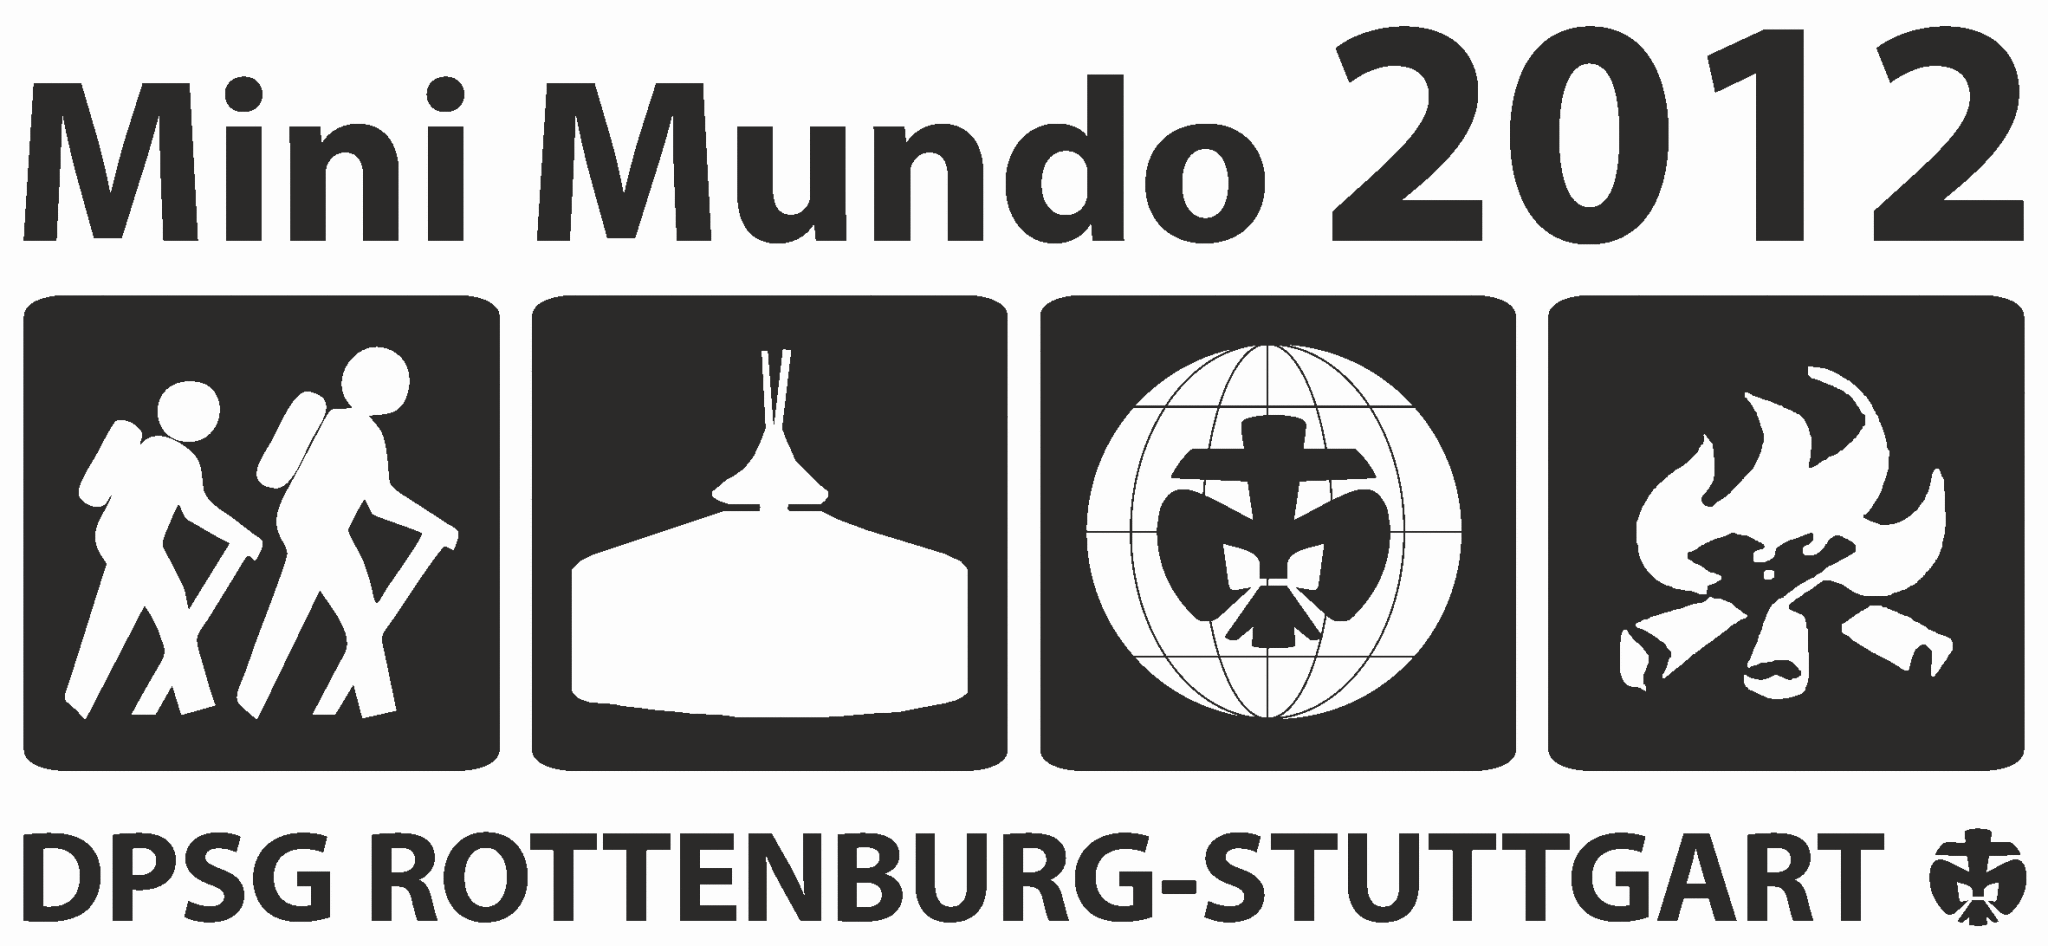 Mini Mundo 2012 Logo